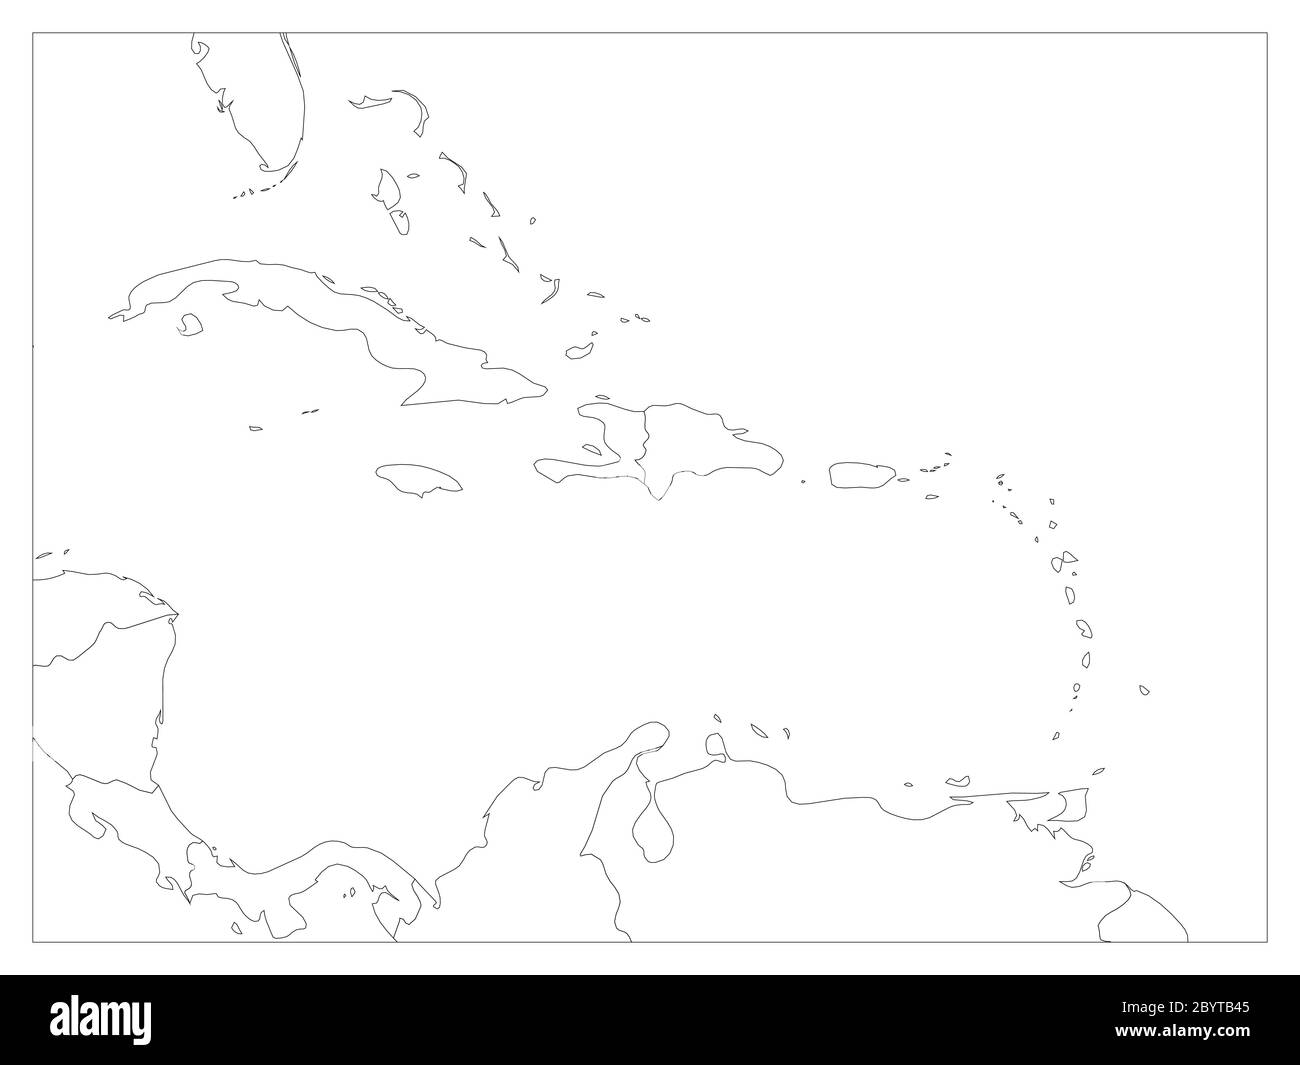 Mappa politica degli stati dell'America centrale e dei Caraibi. Bordi neri. Semplice illustrazione vettoriale piatta. Illustrazione Vettoriale